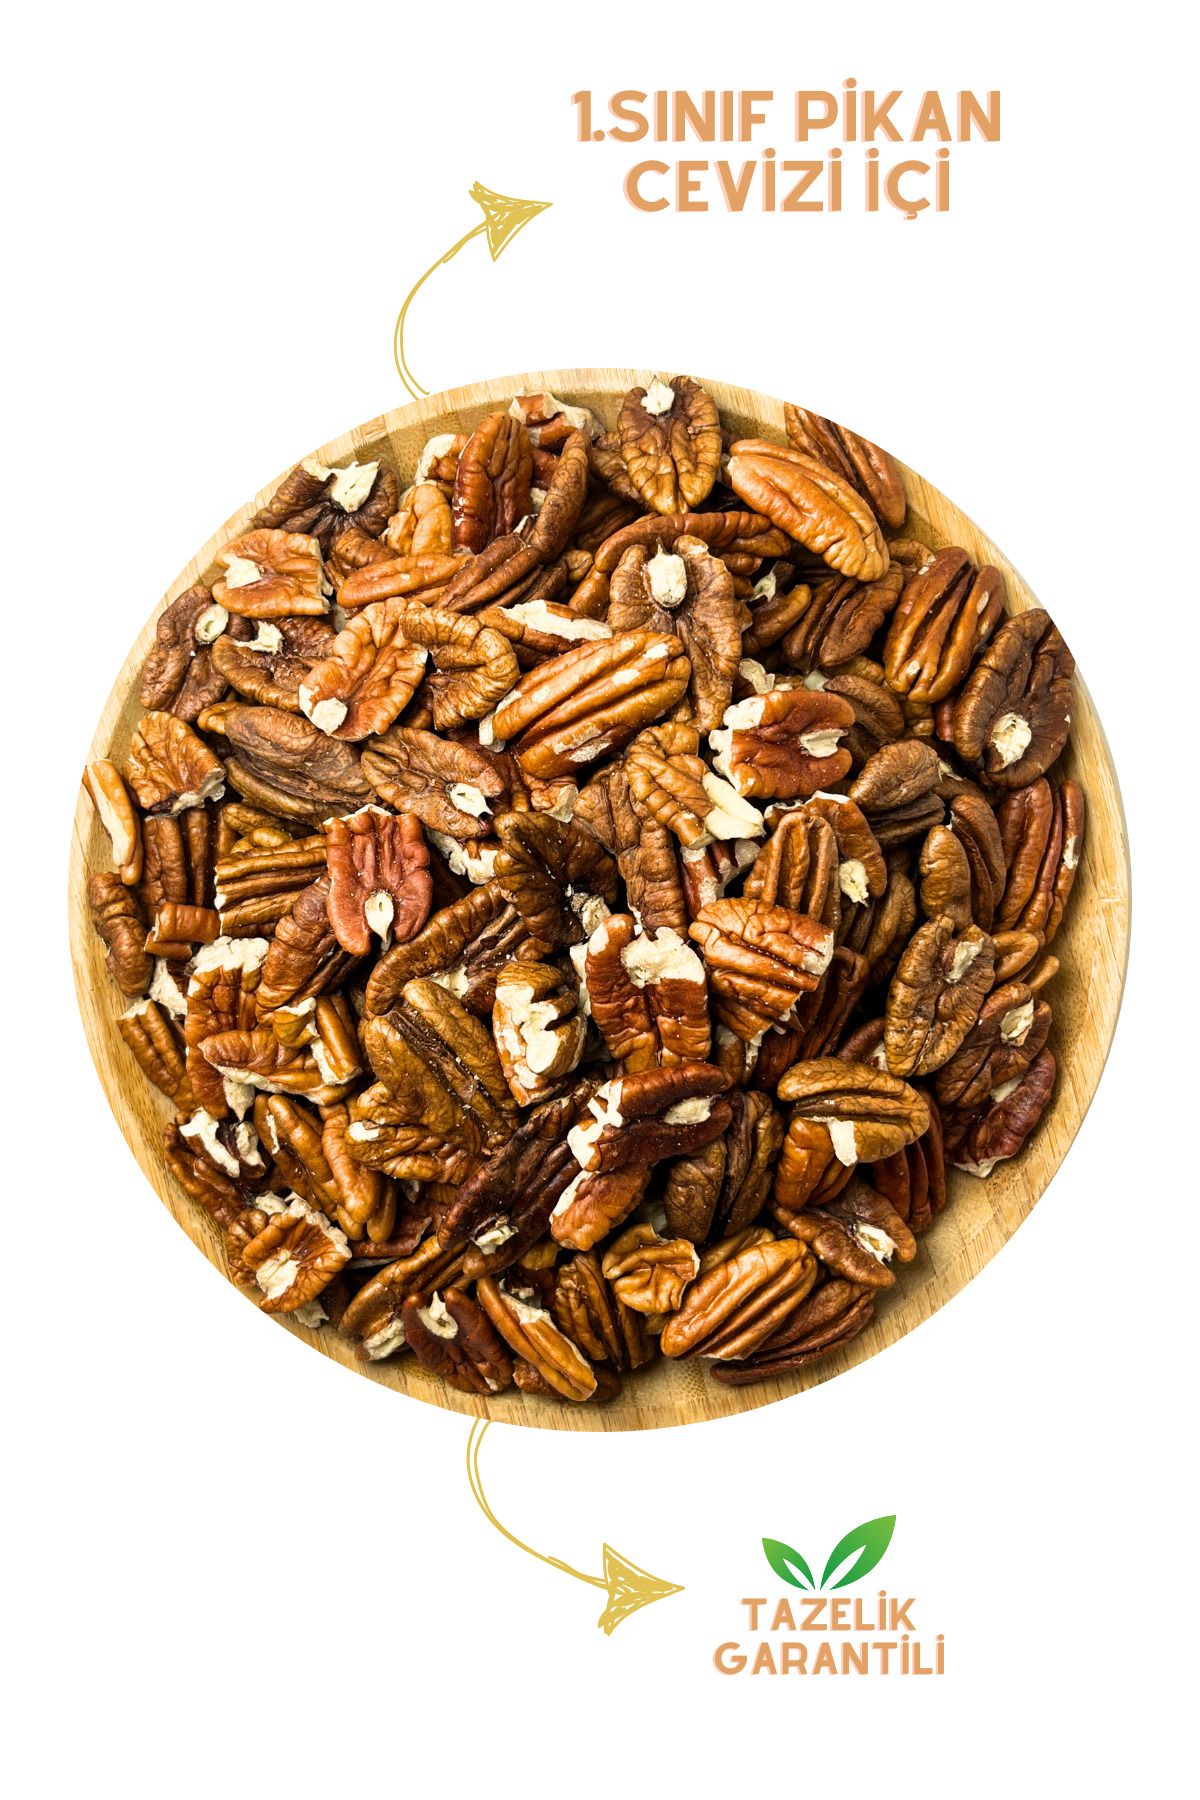 Özdanacı Kuruyemiş Pikan Cevizi İçi Naturel Yeni Mahsul 1.Sınıf 100GR Taze İç Pecan Nuts